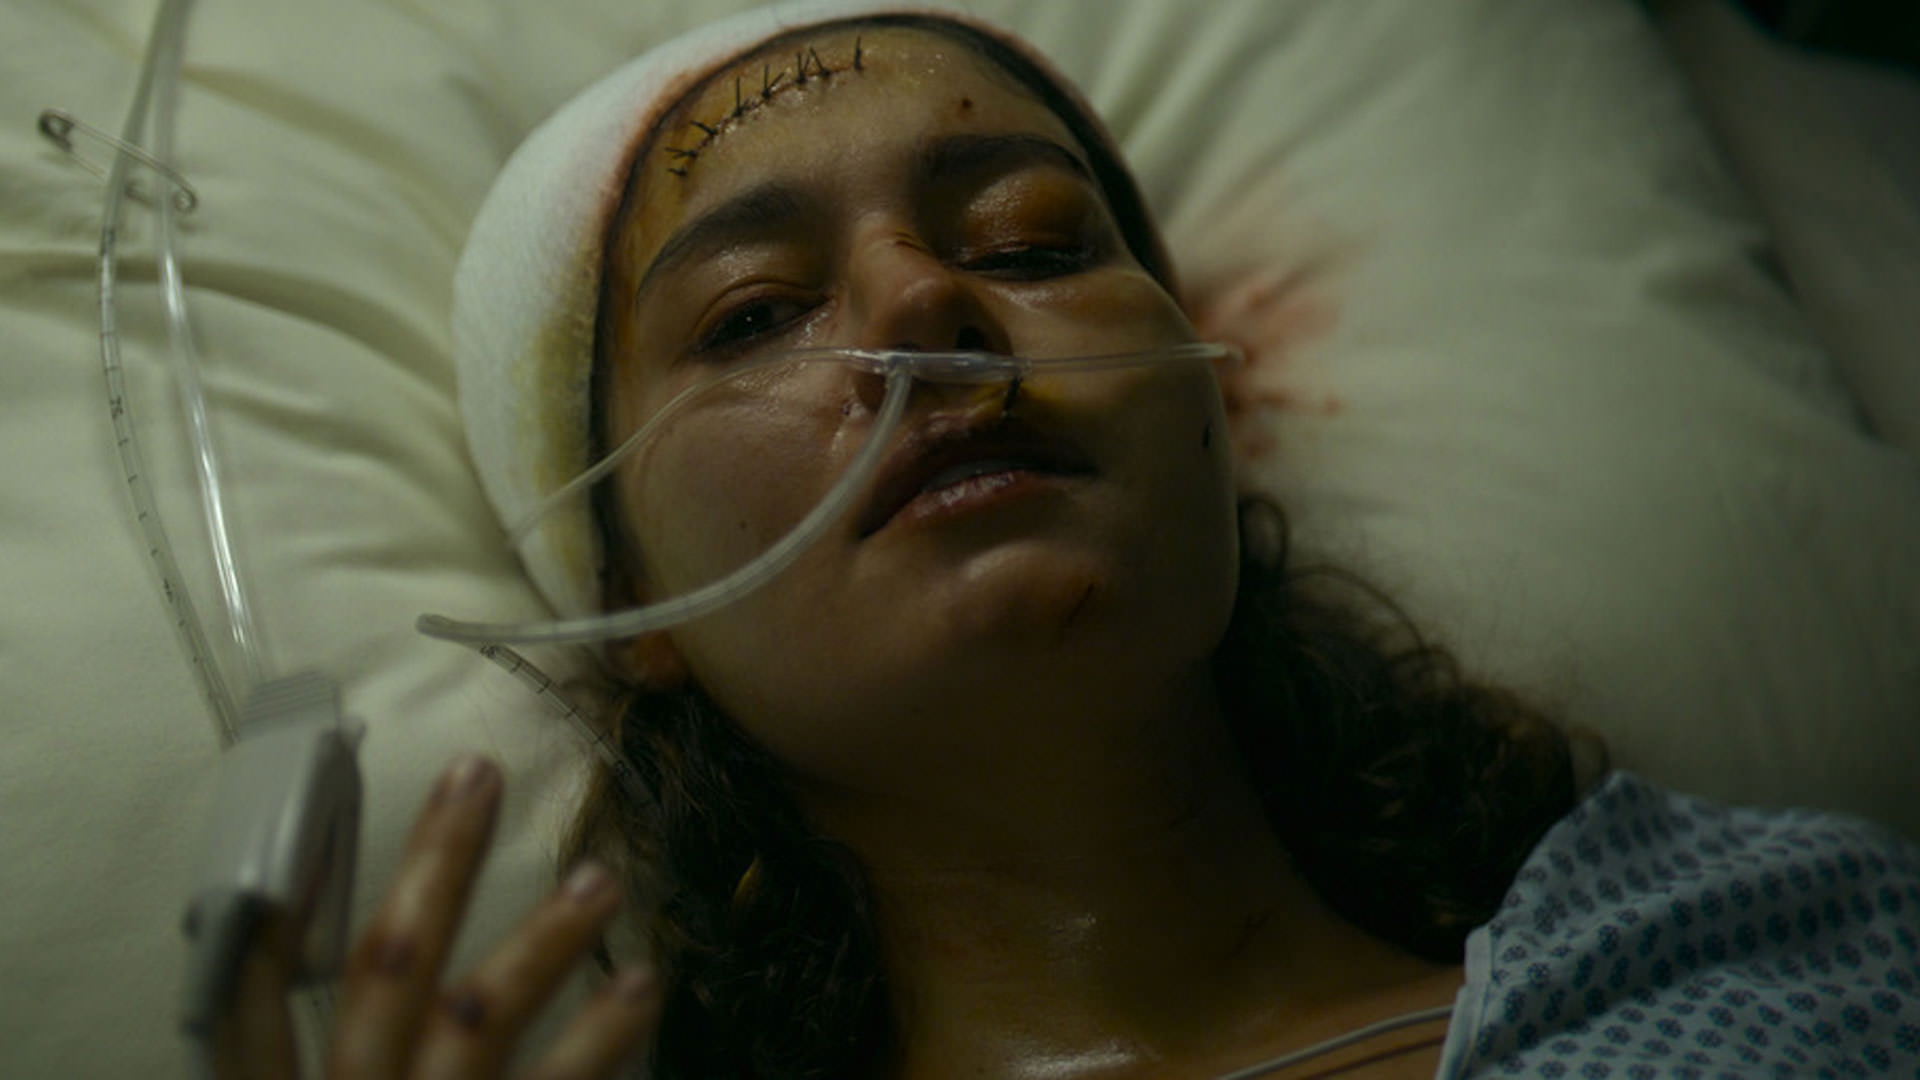 سوفی شارلوت با صورتی زخمی و چشمانی آسیب‌دیده و سری بسته خوابیده روی تخت بیمارستان در نمایی از فیلم قاتل به کارگردانی دیوید فینچر